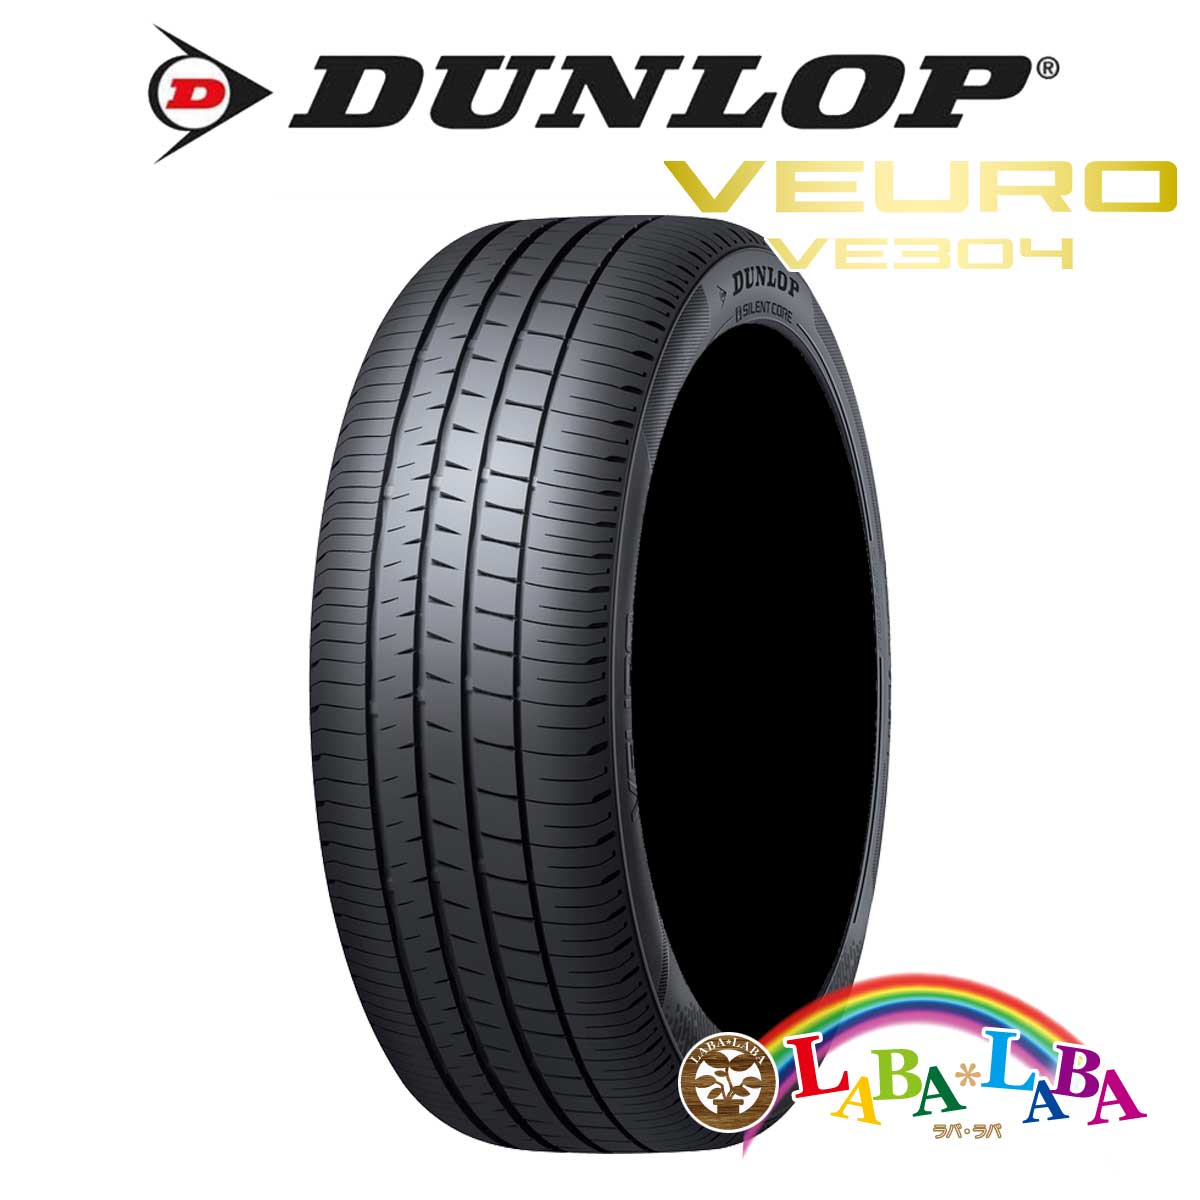 ２本以上送料無料 国産タイヤ サマータイヤ 新品 タイヤのみ 正規品 DUNLOP 素晴らしい価格 ダンロップ VE304 VEURO 55R18 95V ビューロ 215